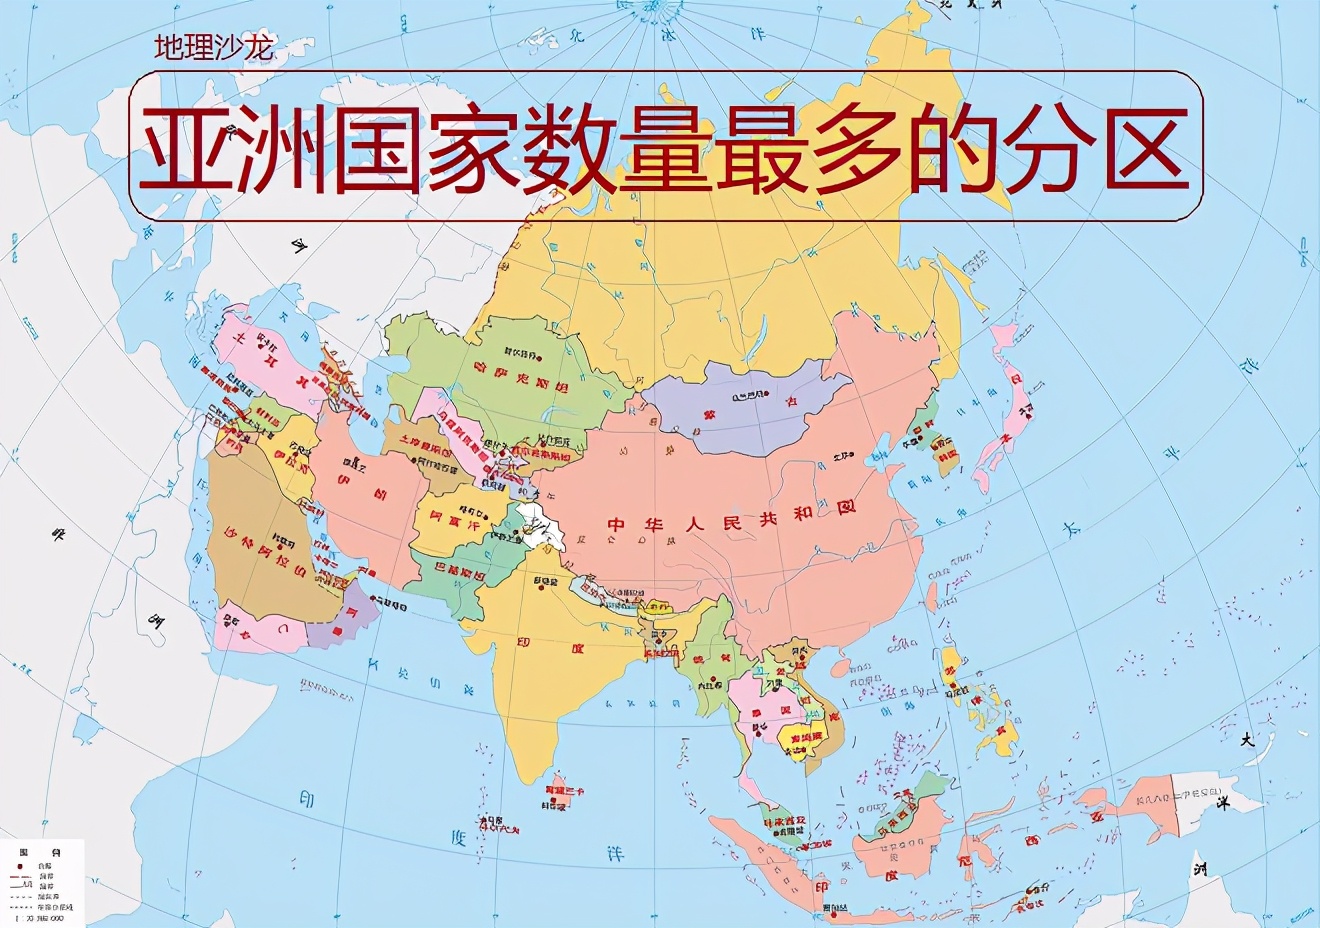 亚洲有多少个国家_亚洲包含的国家概况